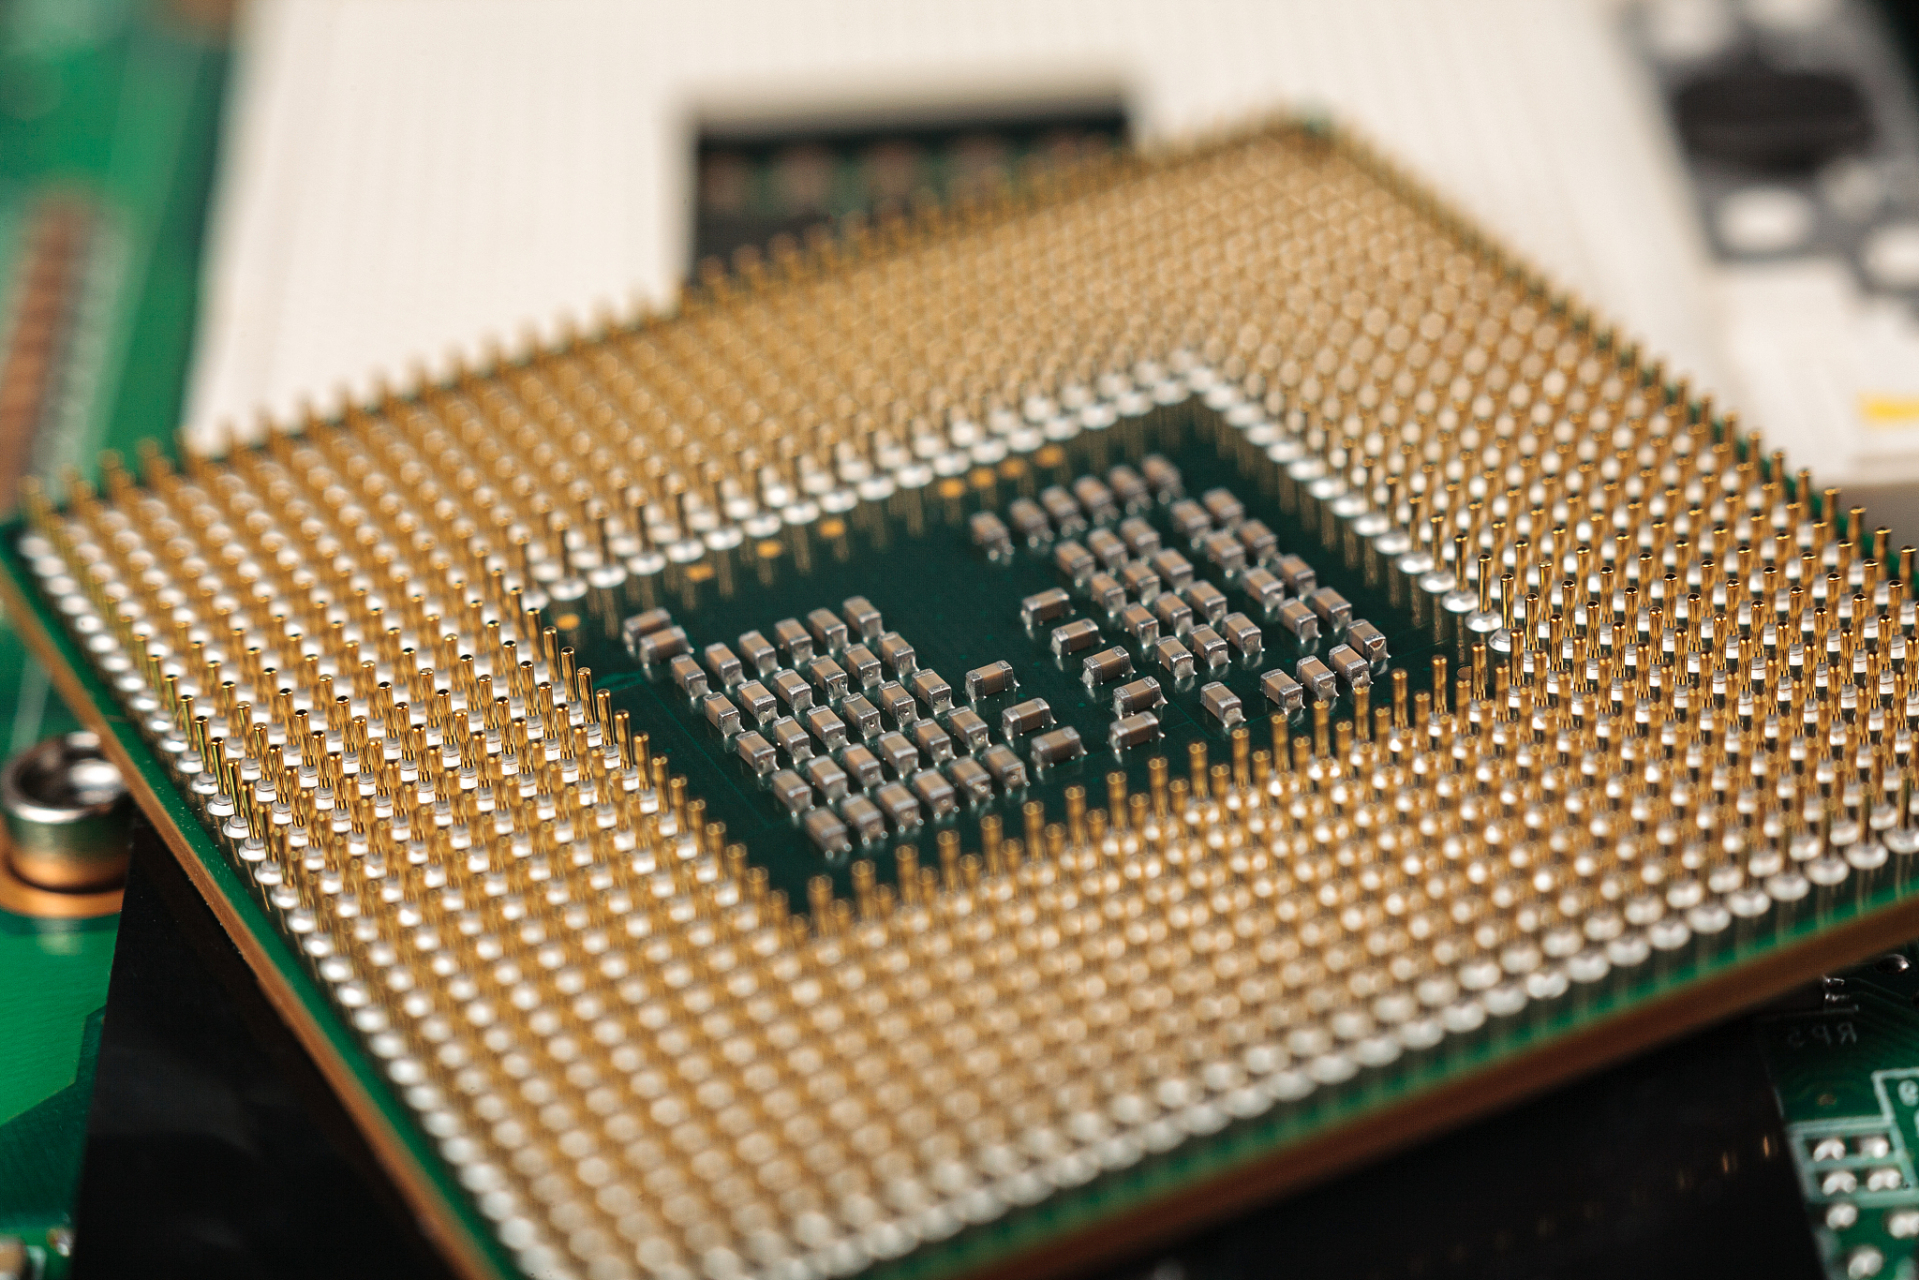 最近龙芯中科推出了新一代四核处理器龙芯3a6000,龙芯3a6000适用于高